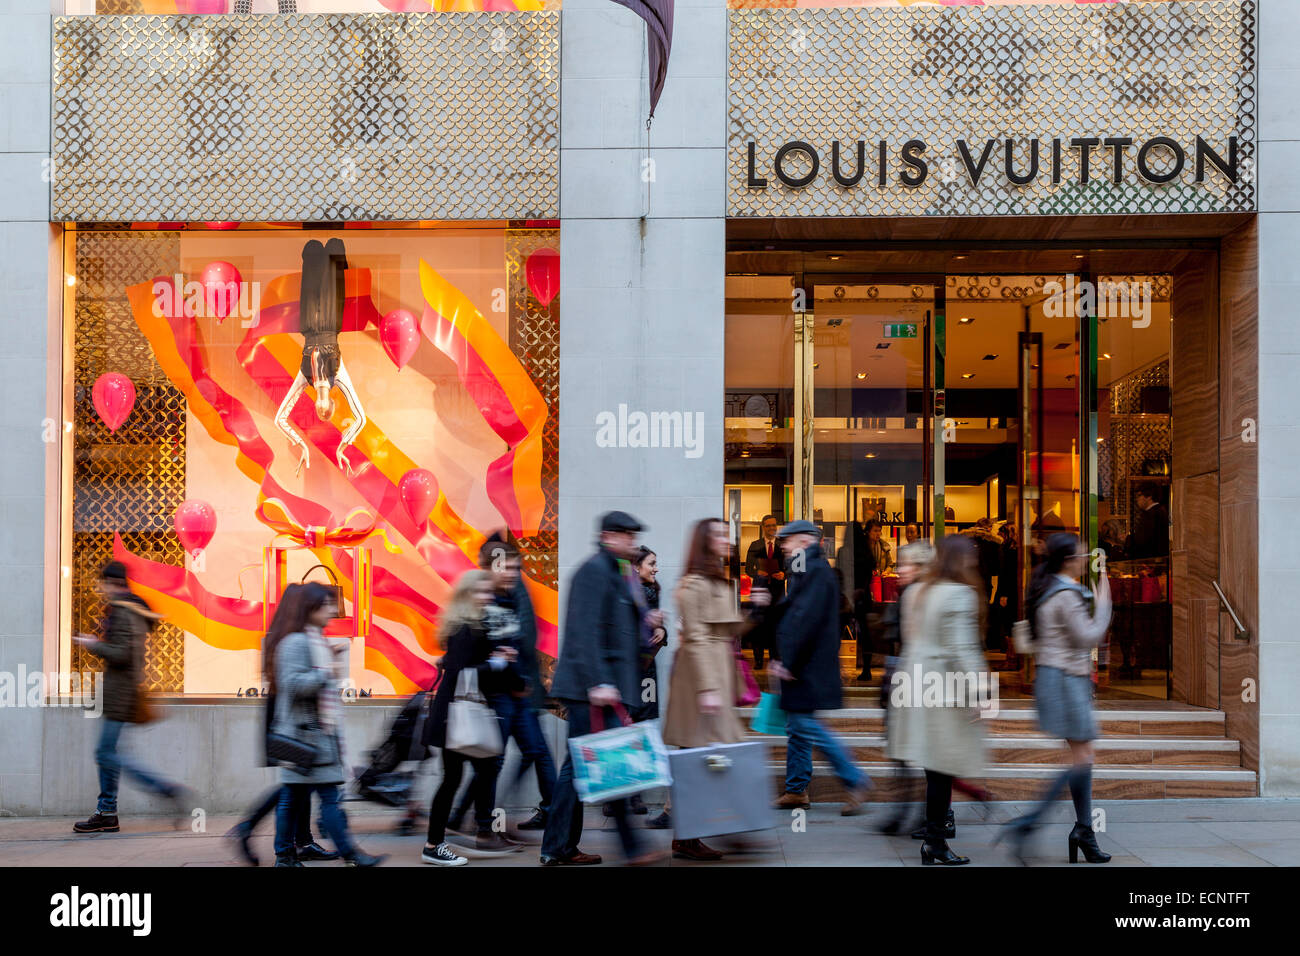 Louis Vuitton store – Stock Editorial Photo © teamtime #125319492